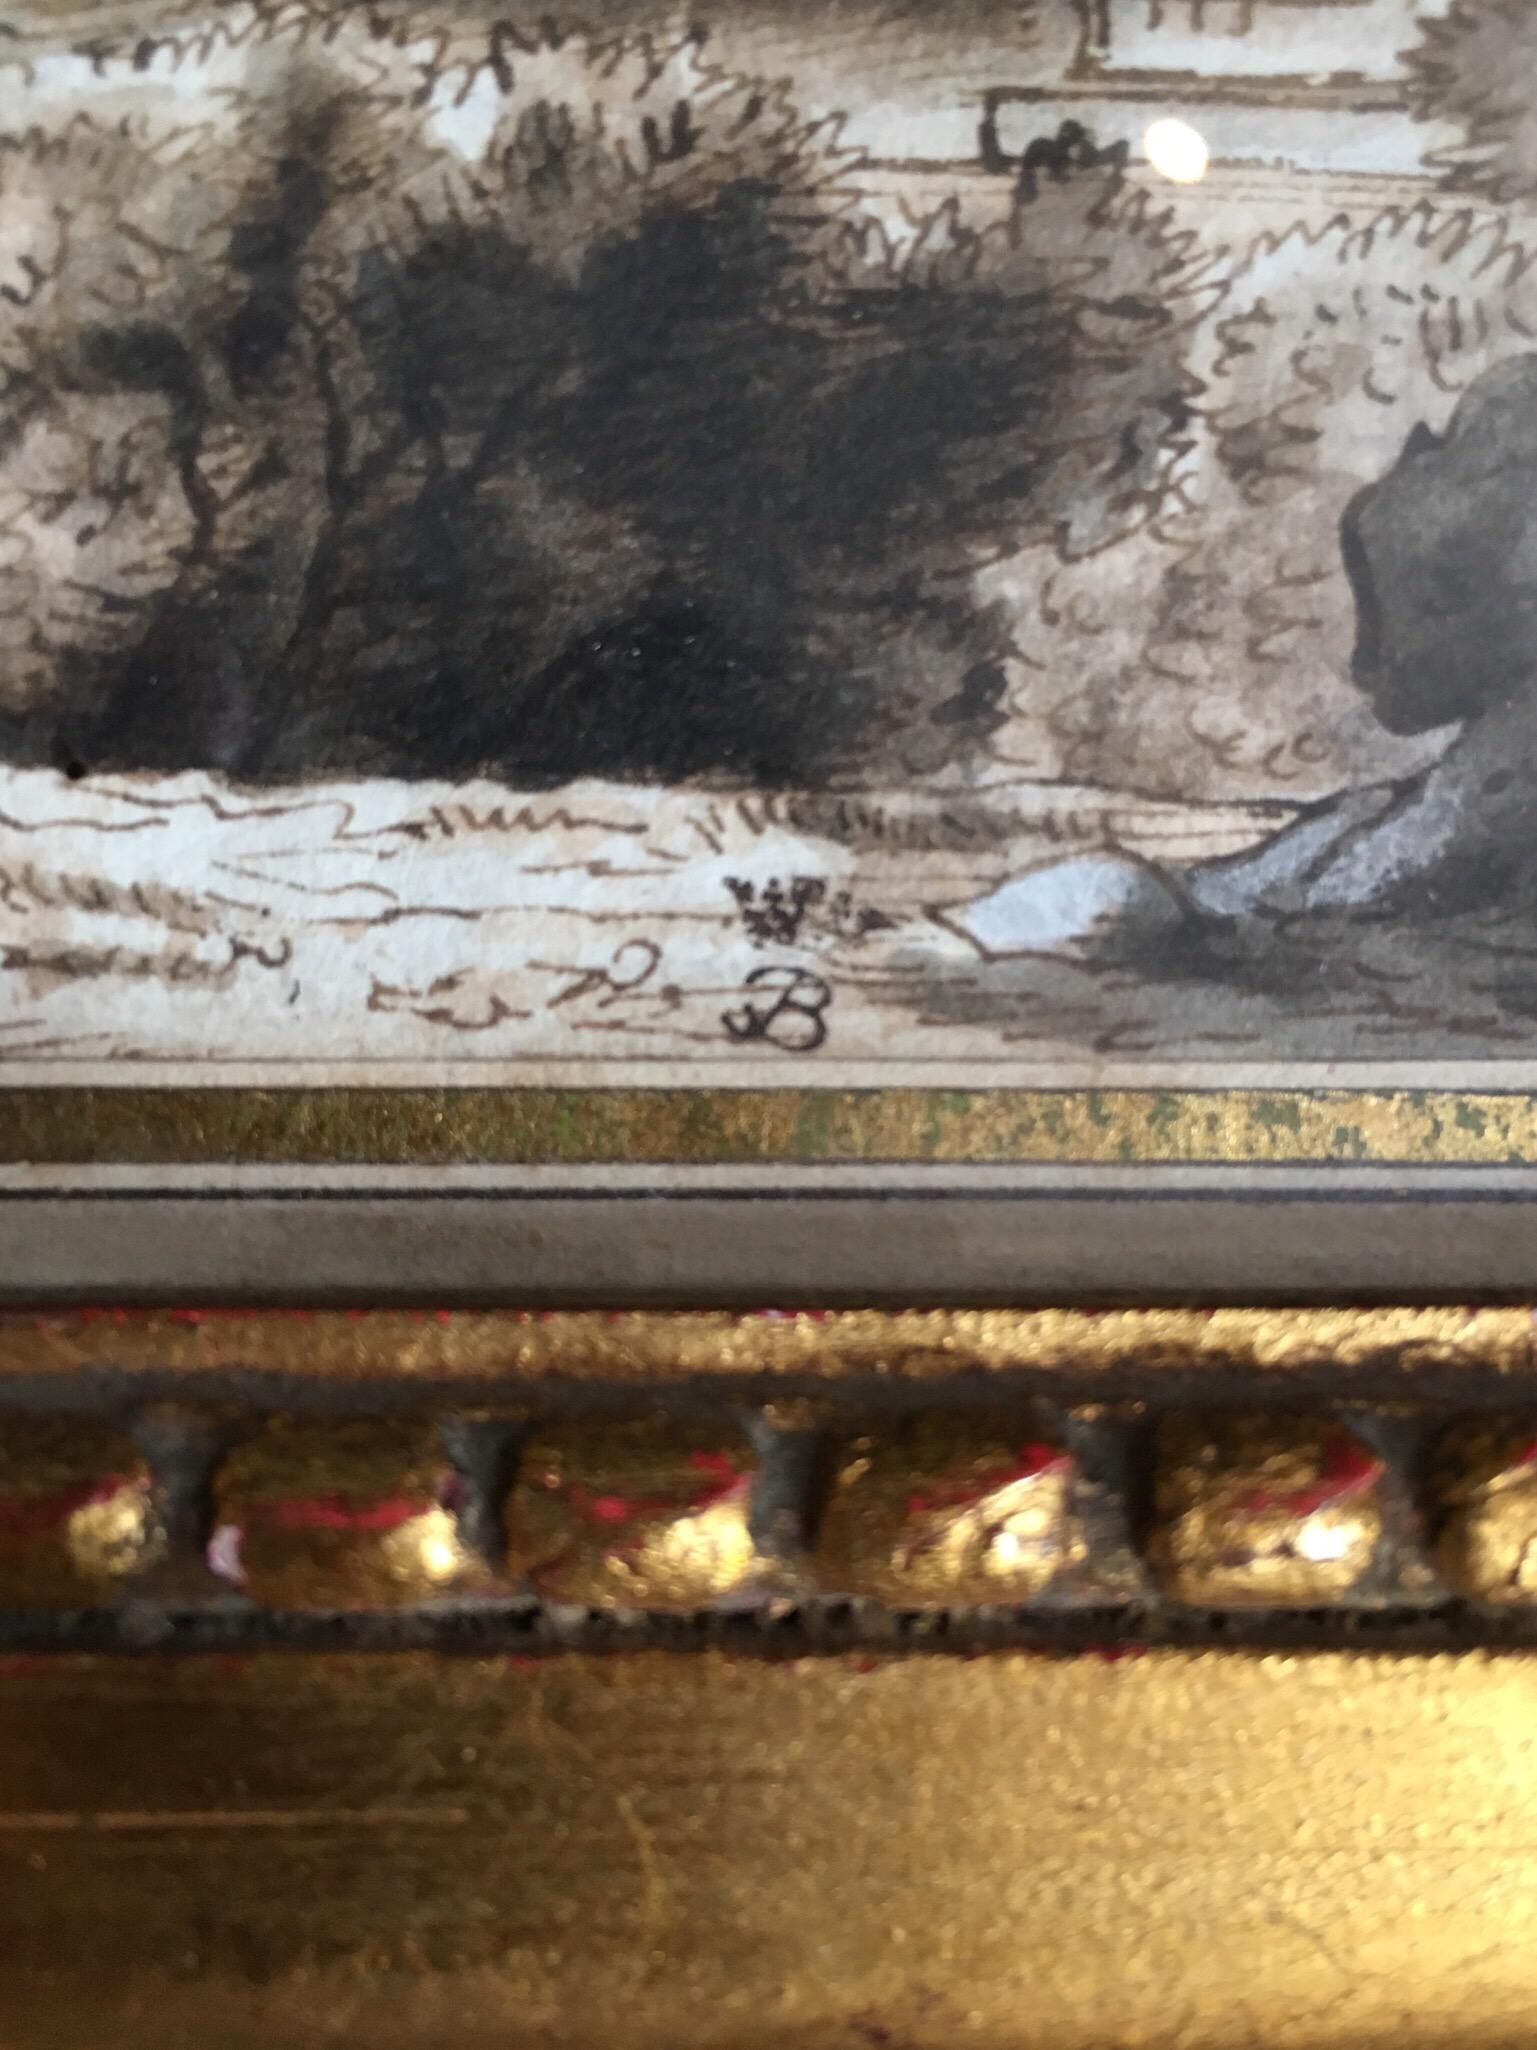 Grand Tour Studie
Italienische Schule, 18. Jahrhundert
monogrammiert, rechte untere Ecke,
Aquarell lavierte Malerei auf Karton, verglaster Rahmen
Gerahmte Größe: 9 x 11 Zoll

Das Gemälde fängt diesen idyllischen Blick auf eine ruhige, klassische